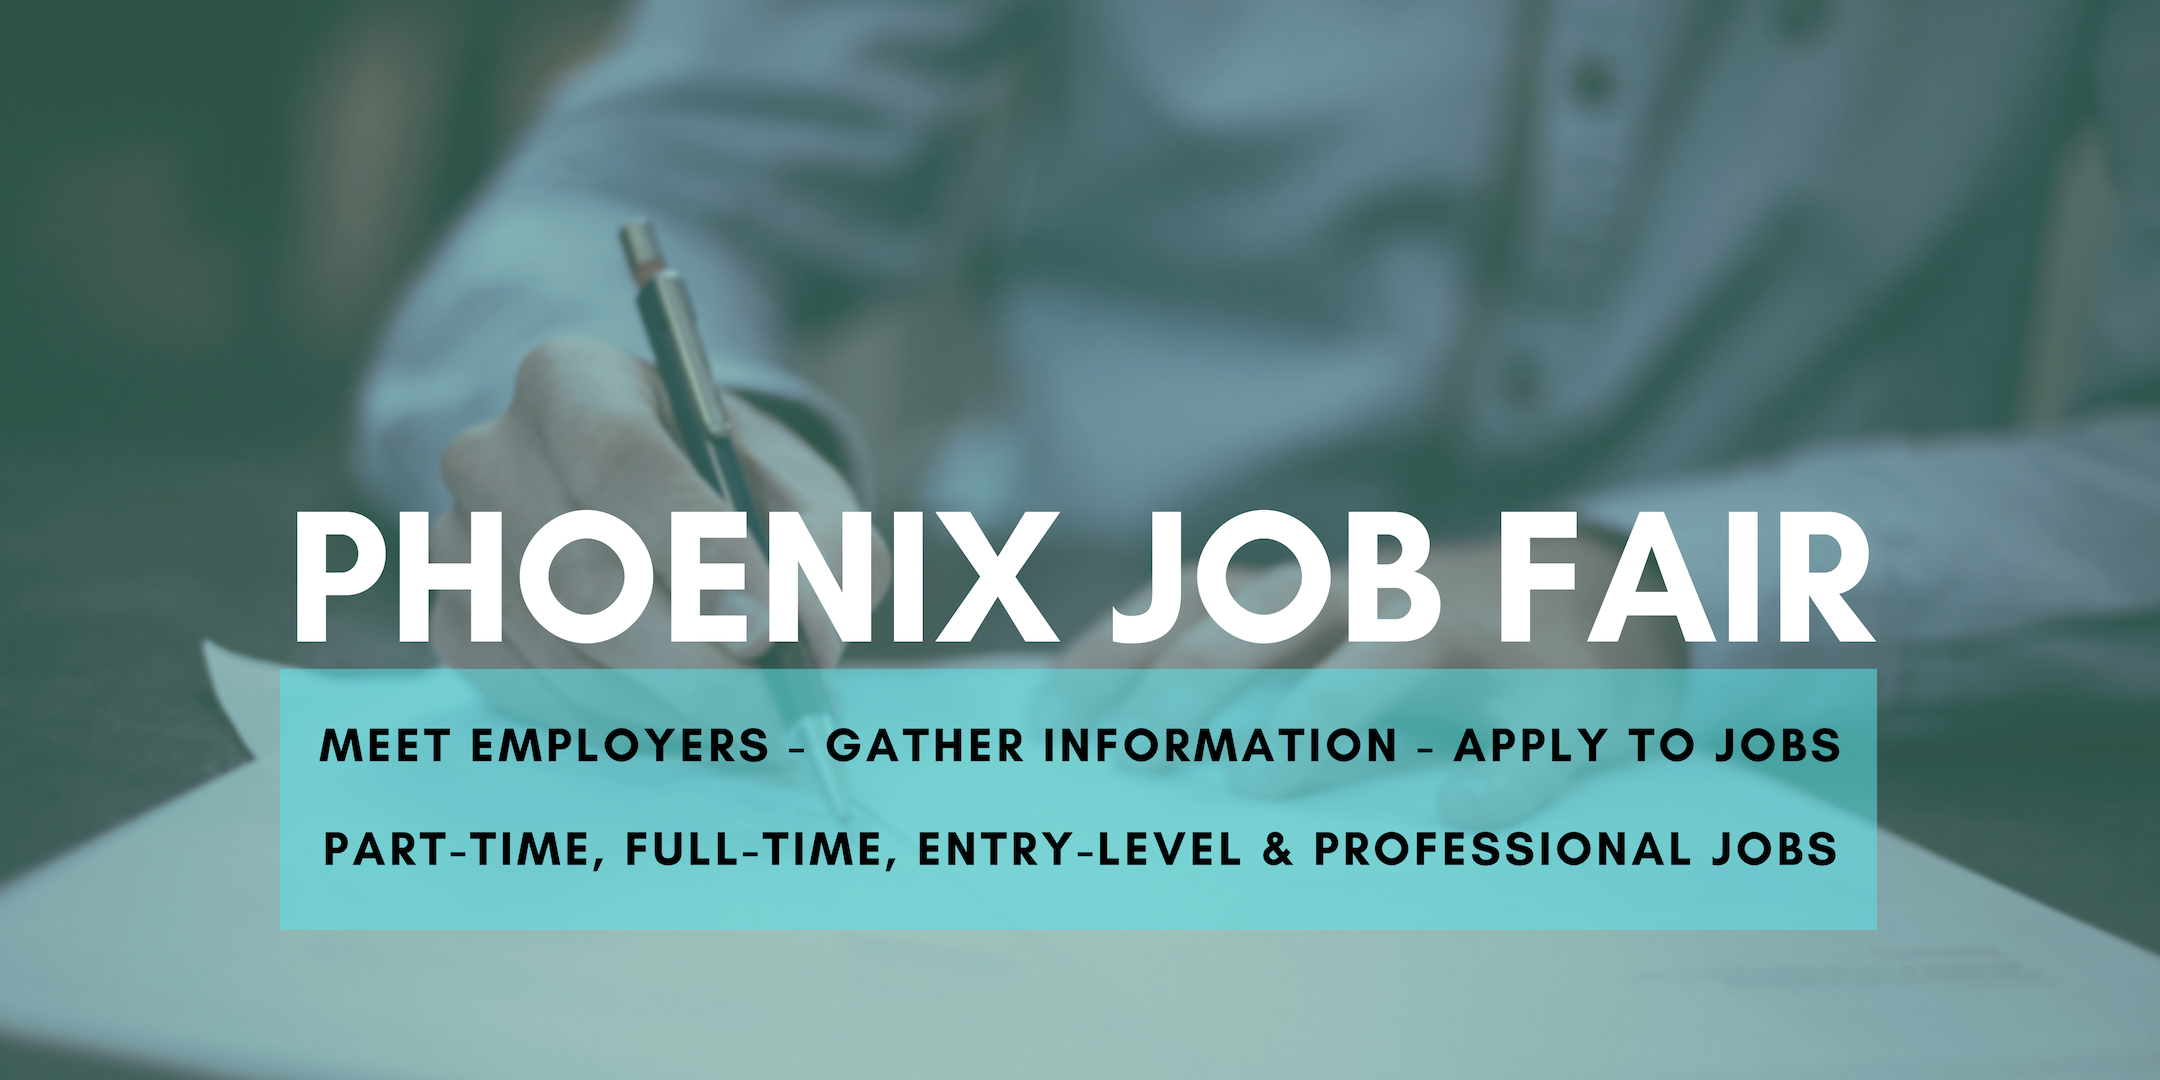 Phoenix Job Fair - July 22, 2020 - Career Fair